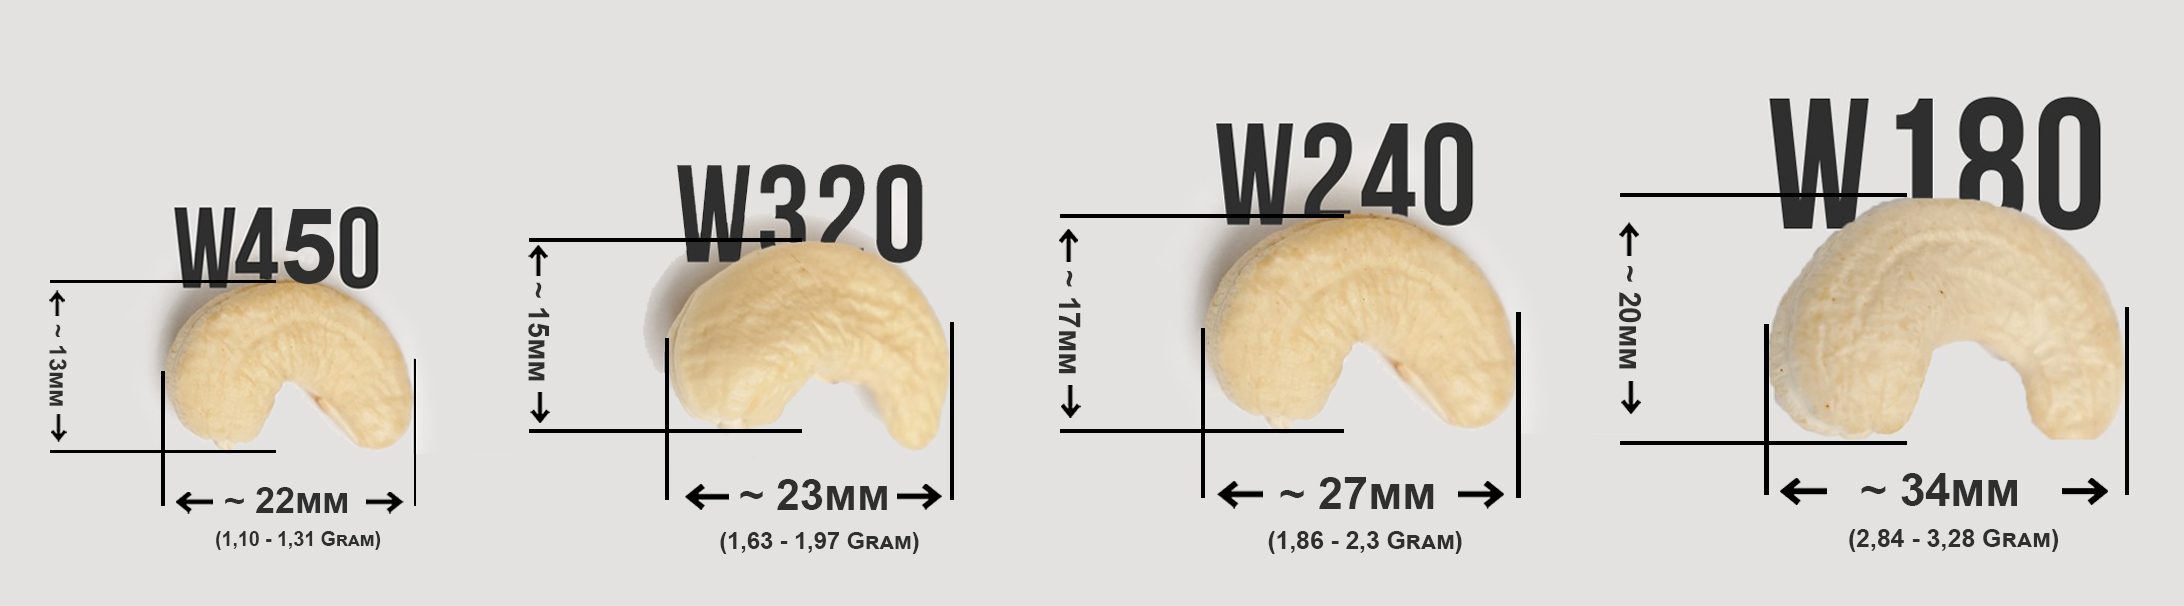 Compare with similar Vietnam Cashew Grade: W180, W240, W320, W450...